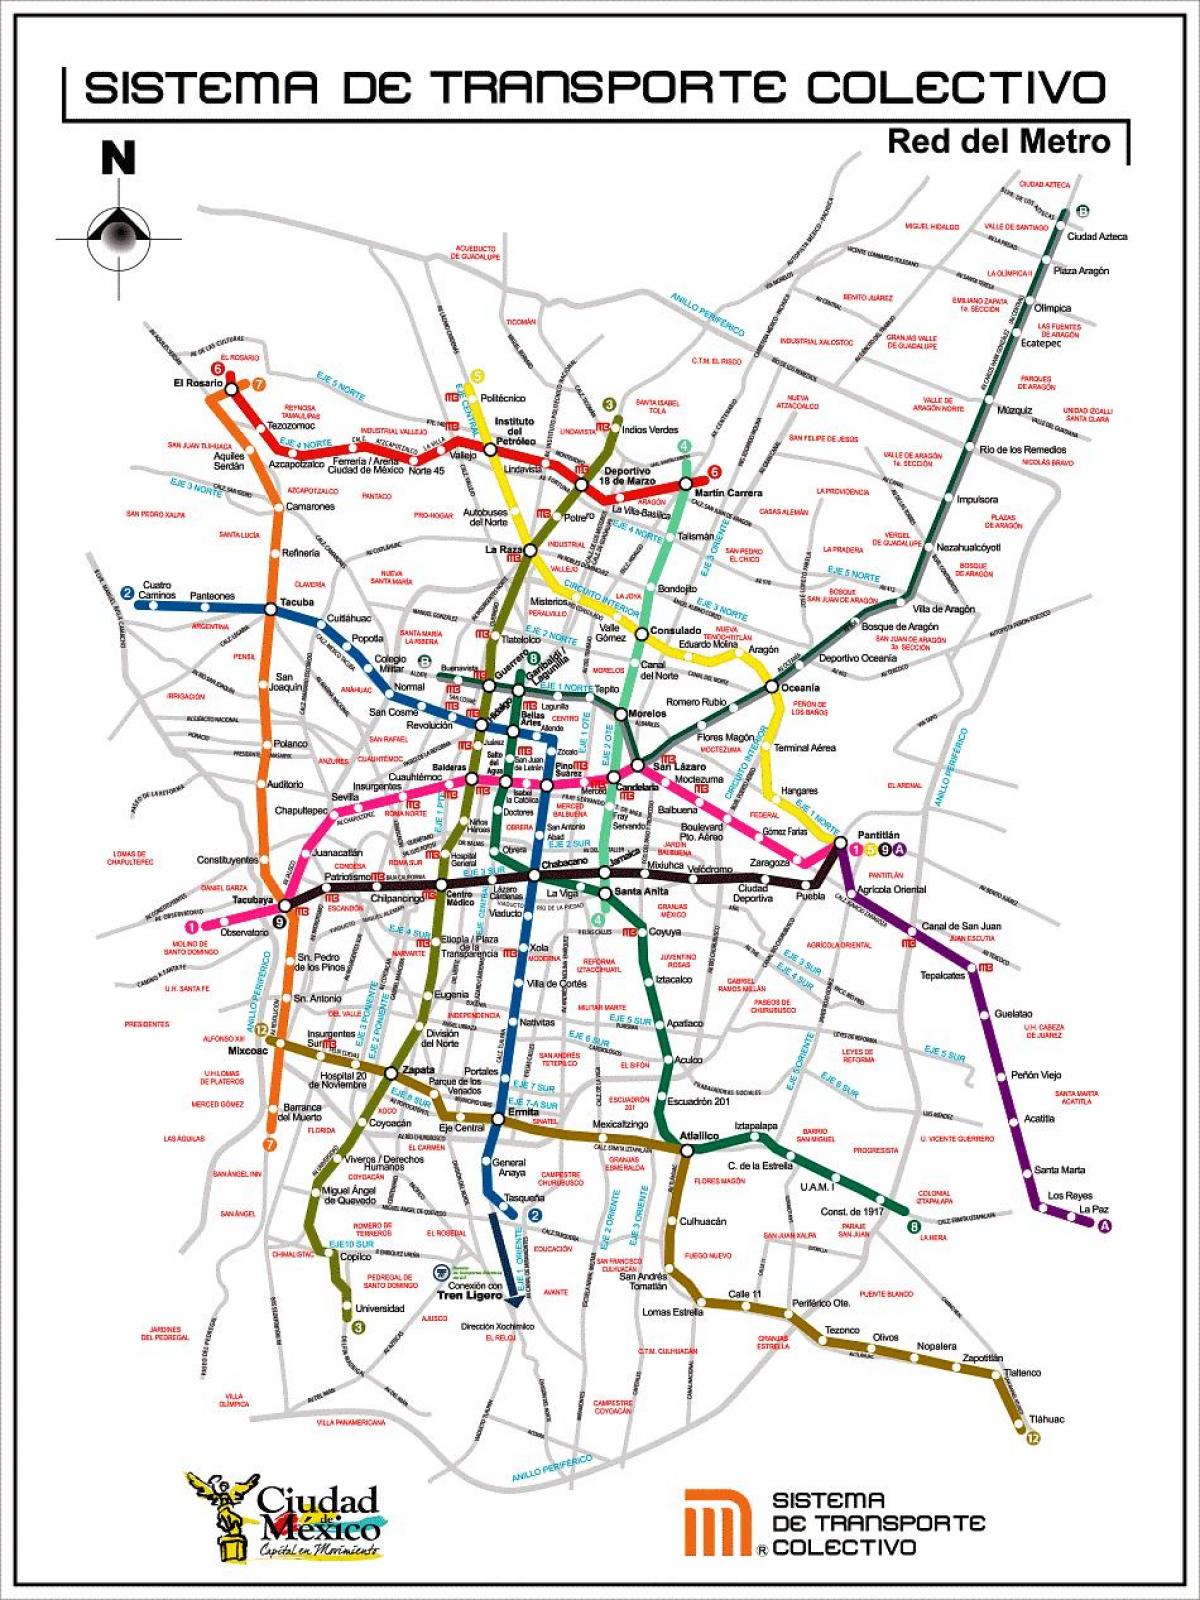 Mexico City transit göster